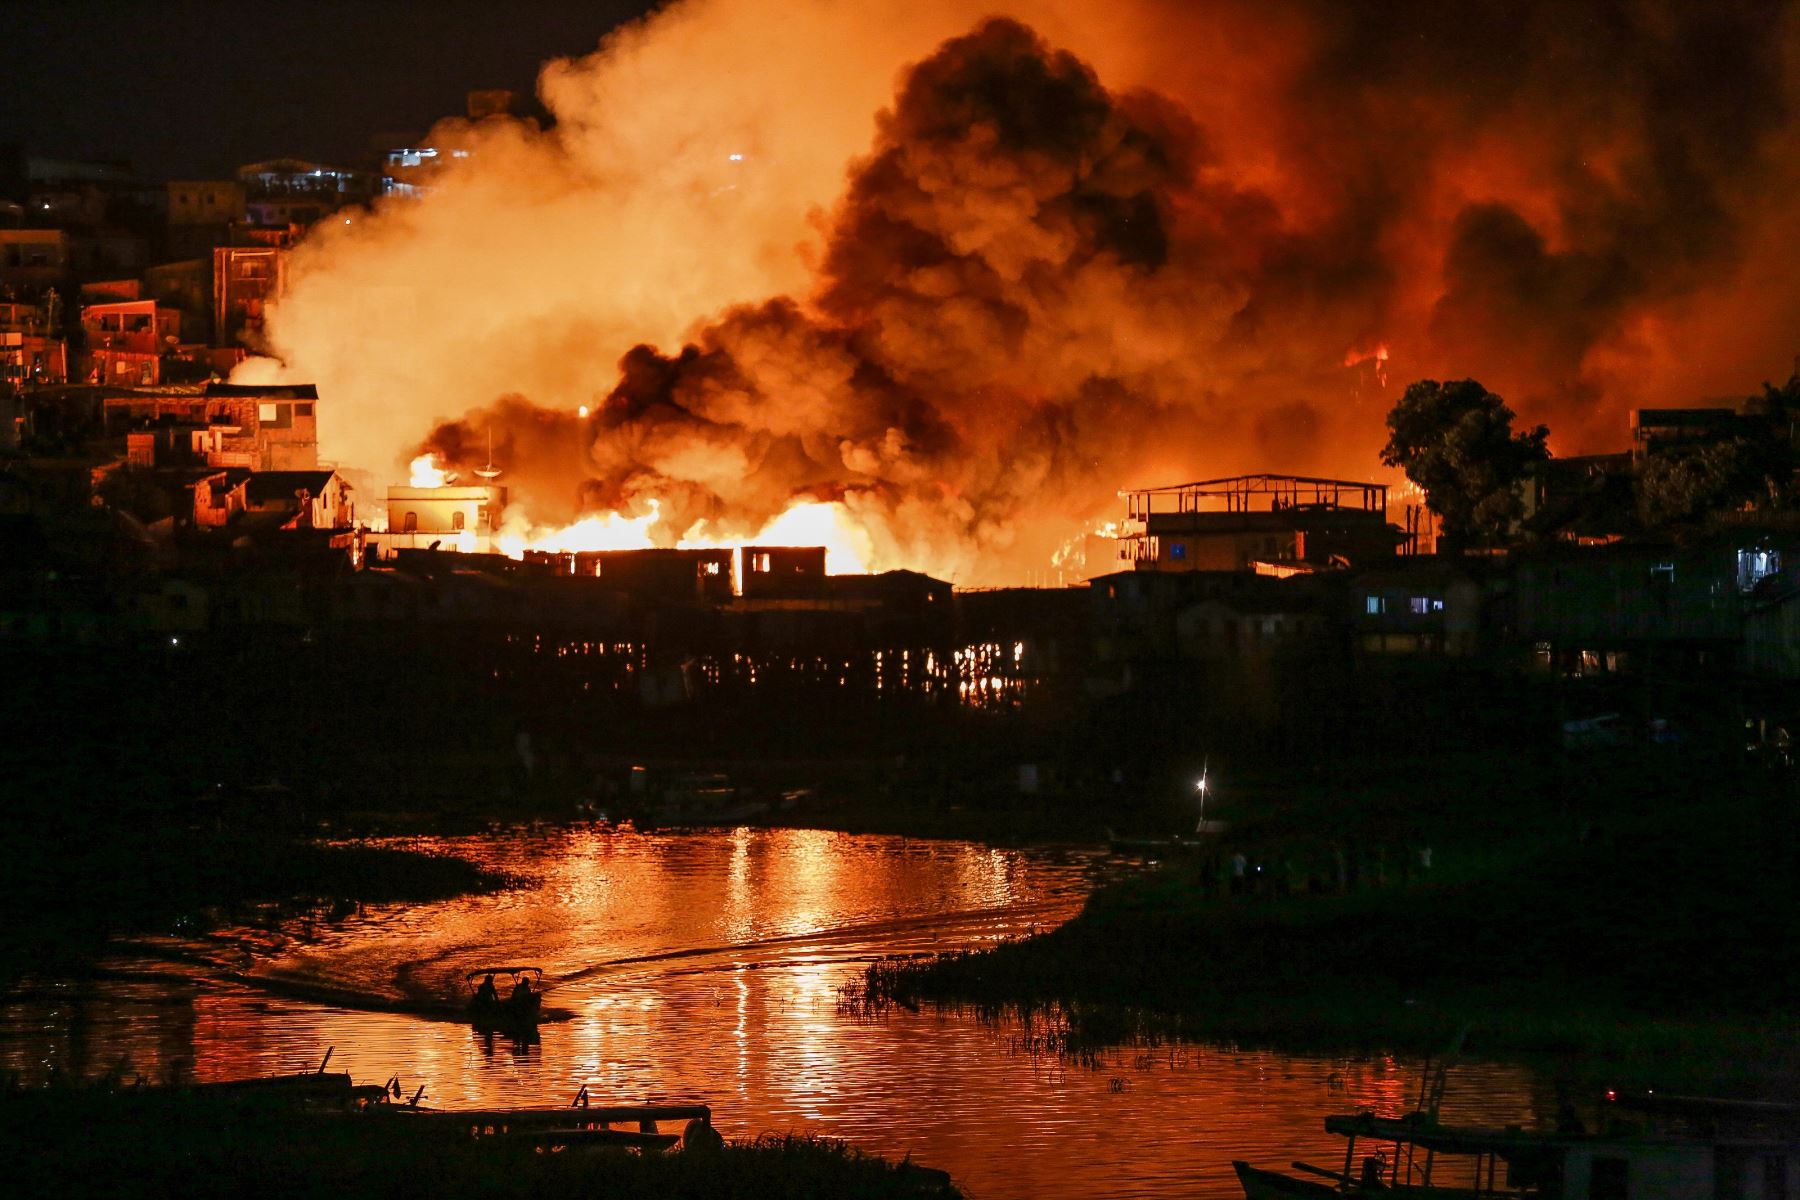 Vista del barrio de Educandos envuelto en llamas durante un incendio masivo en Manaus, estado de Amazonas, Brasil Foto: AFP